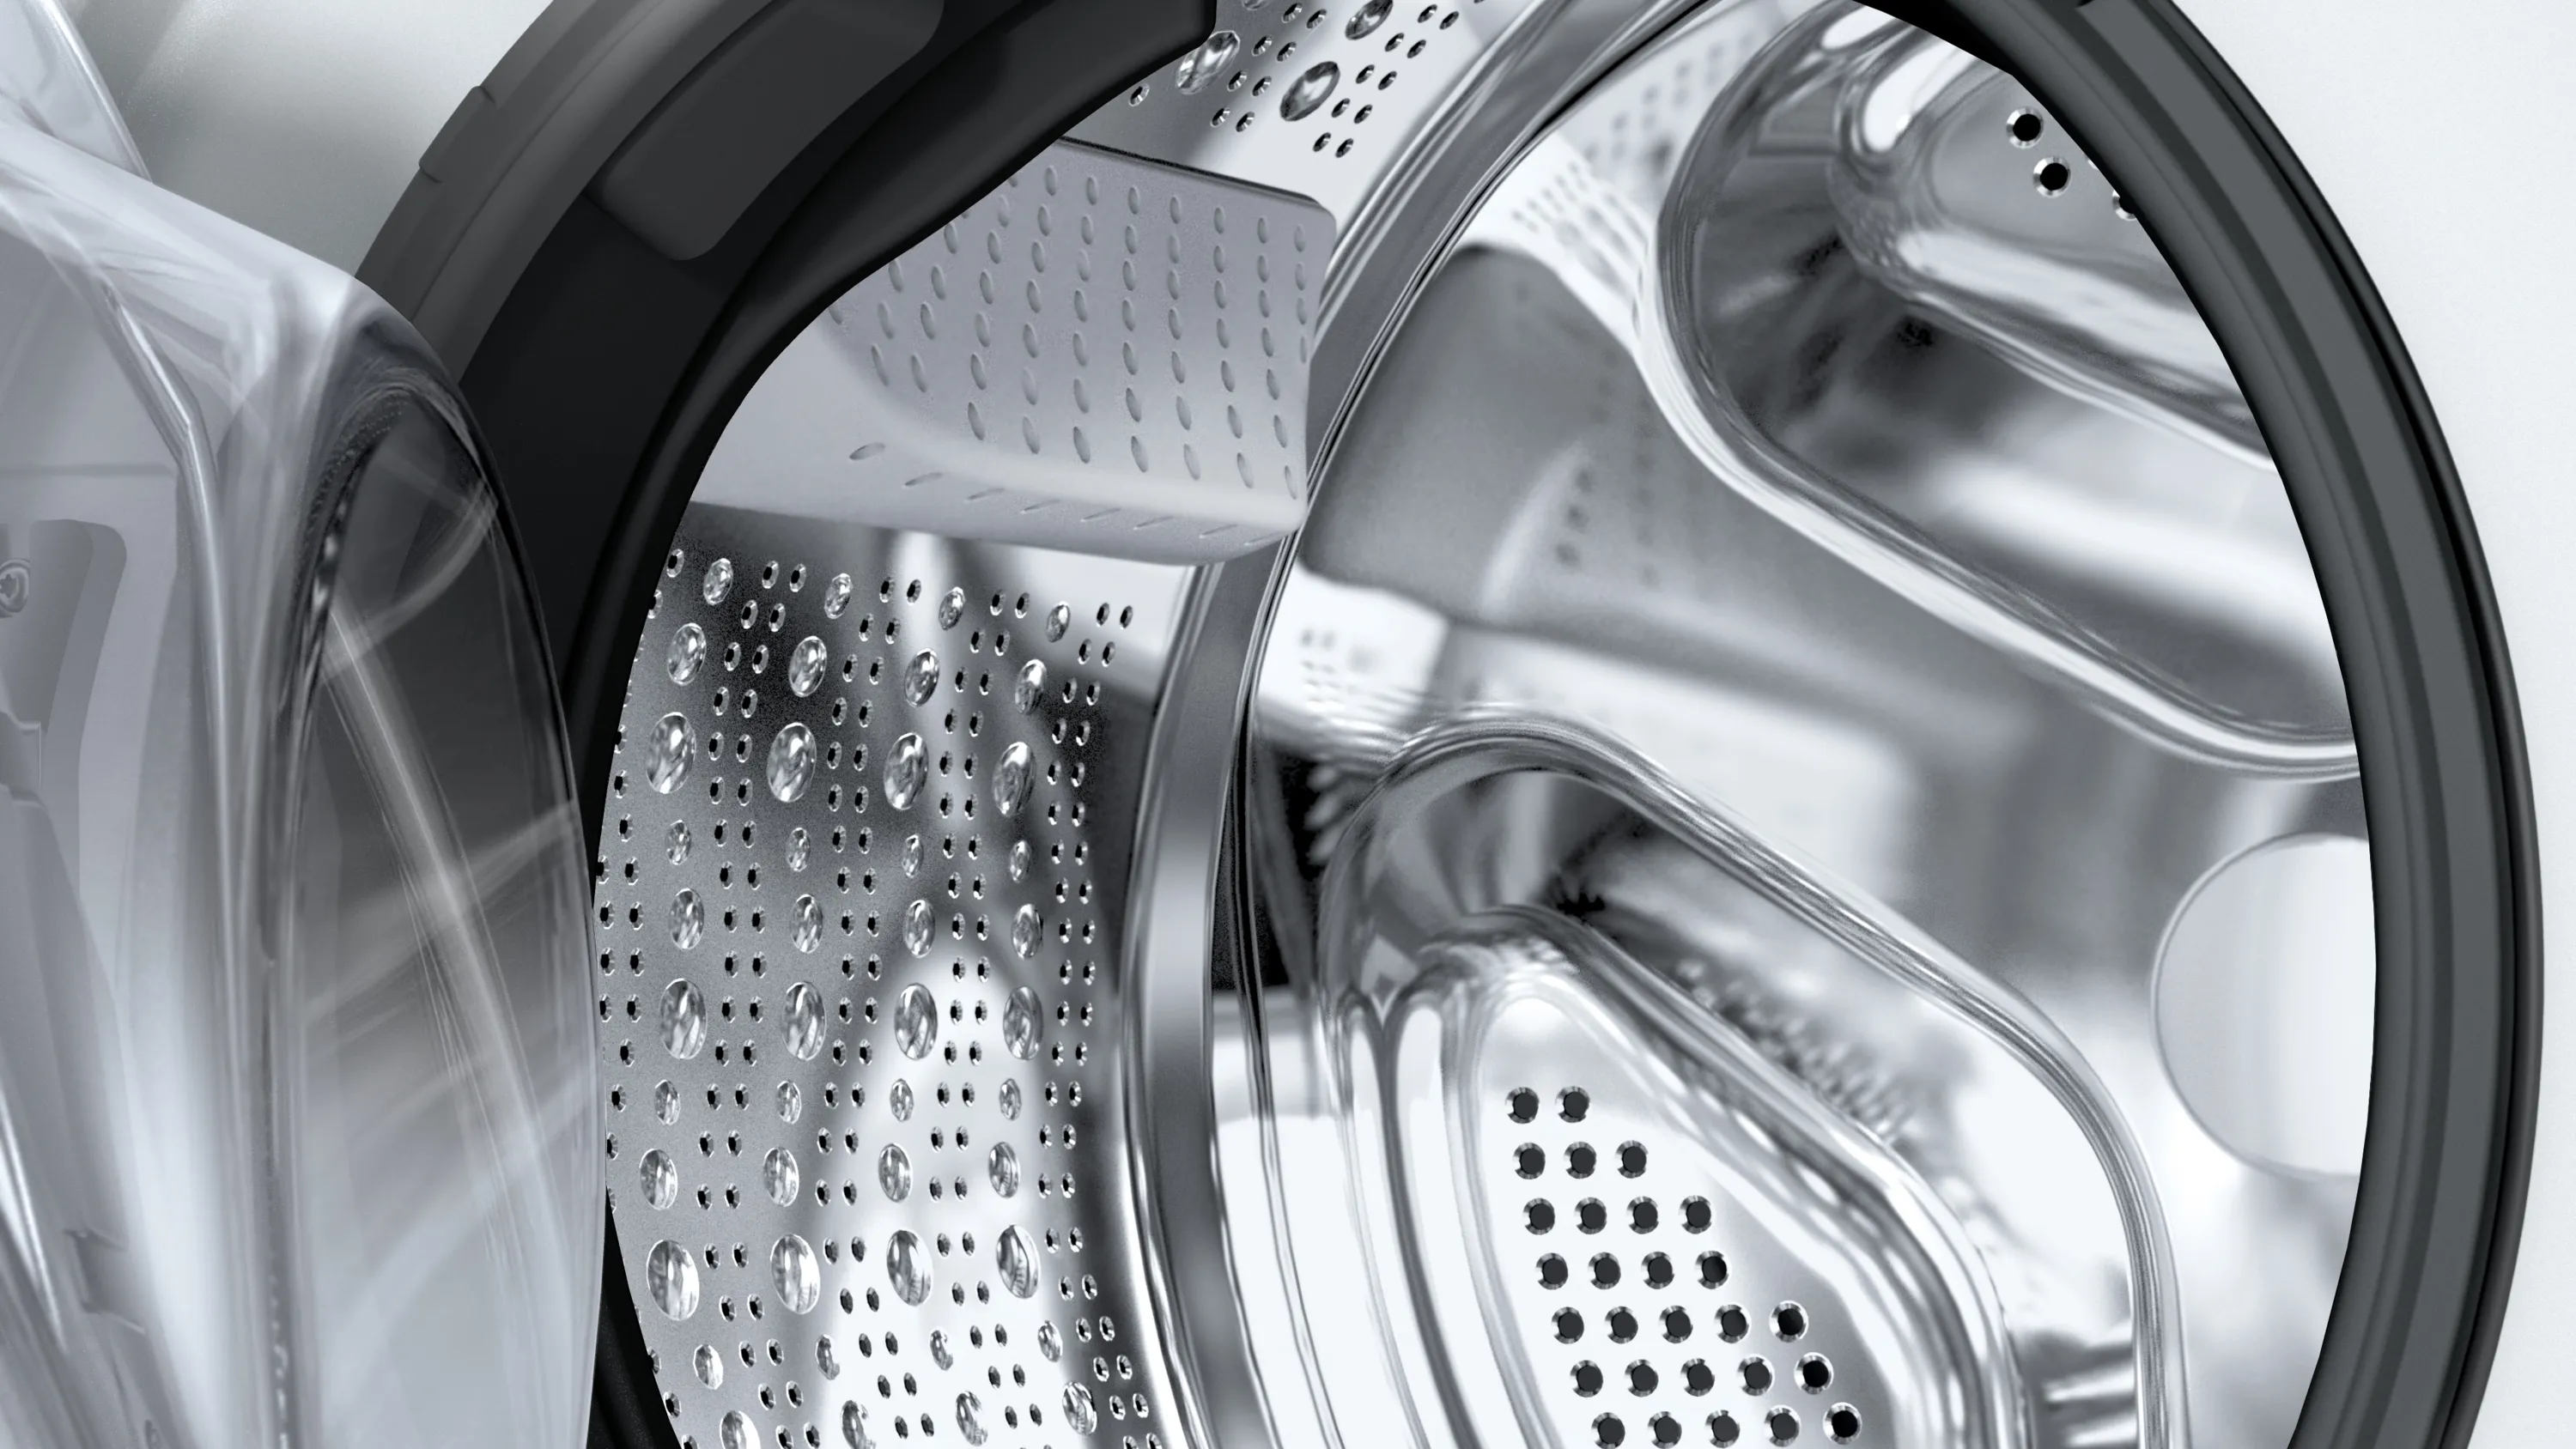 Mašina za pranje i sušenje veša WNG24400BY Serija 6, 1400 okr